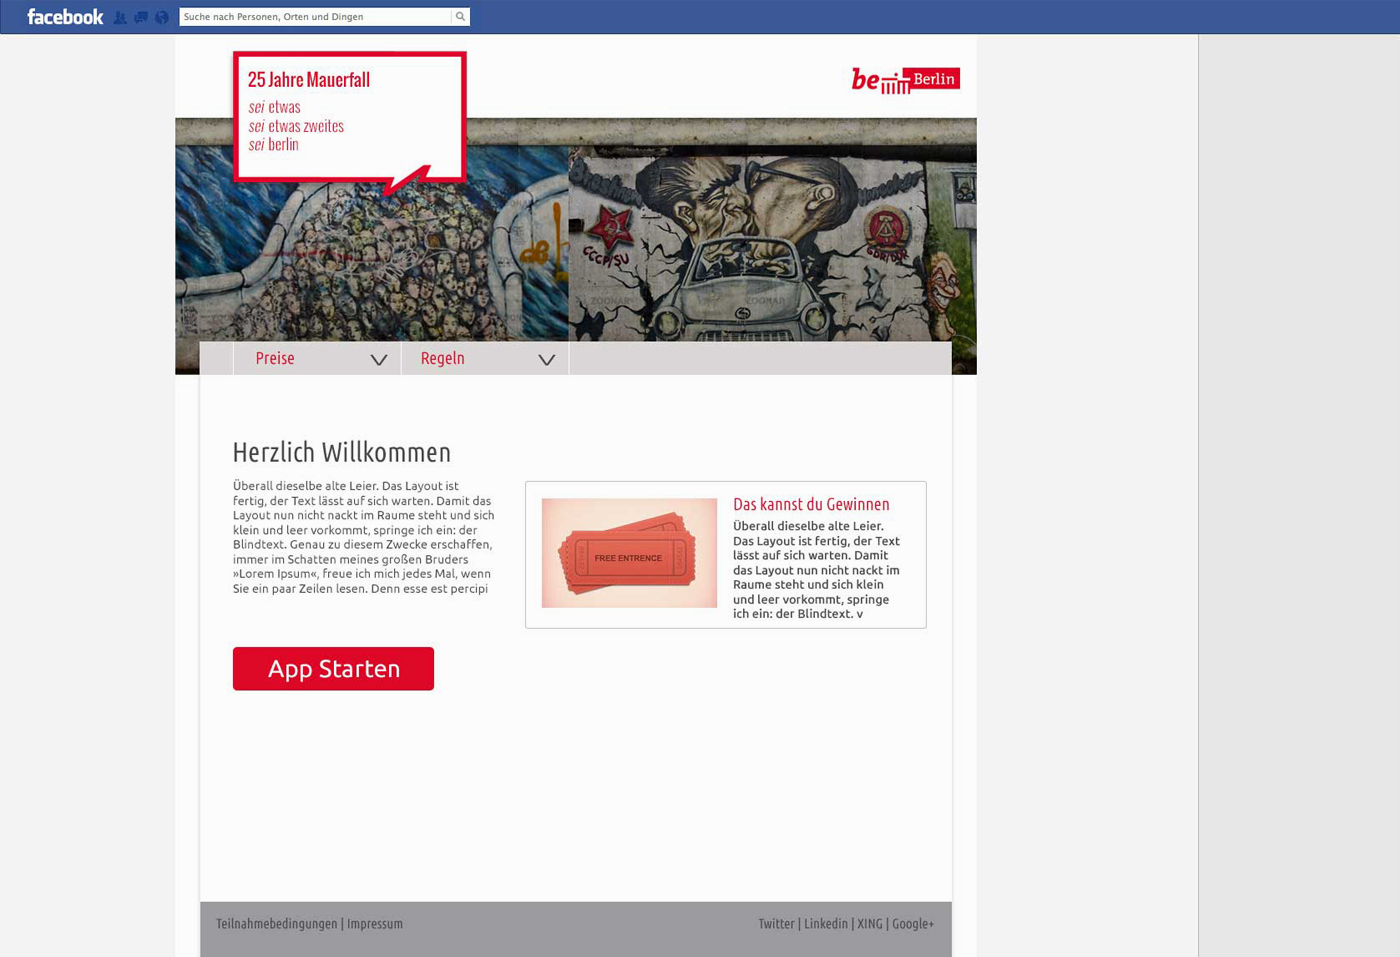 Navarts Webdesign Berlin - Berlin Partner Mauerfall App